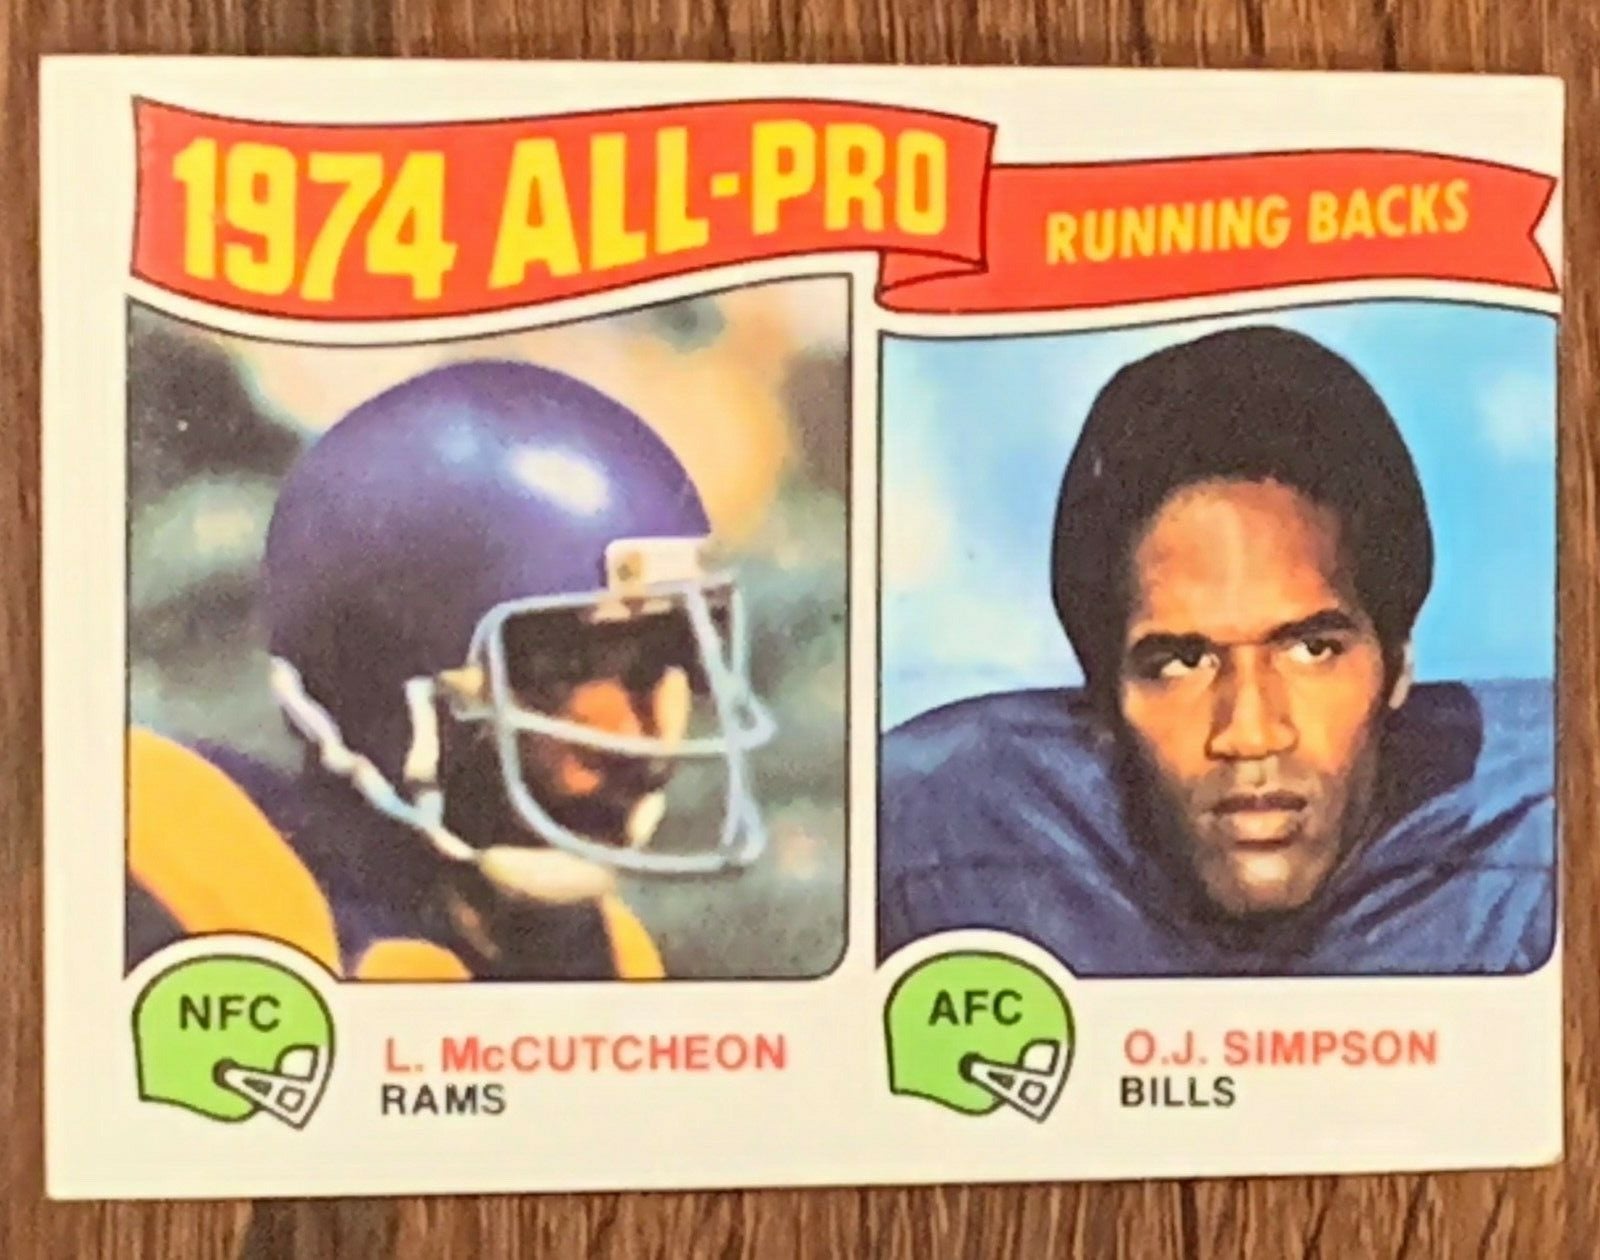 OJ Simpson Card 1973 LOW PRICE $$$$$$$$$$$$ 